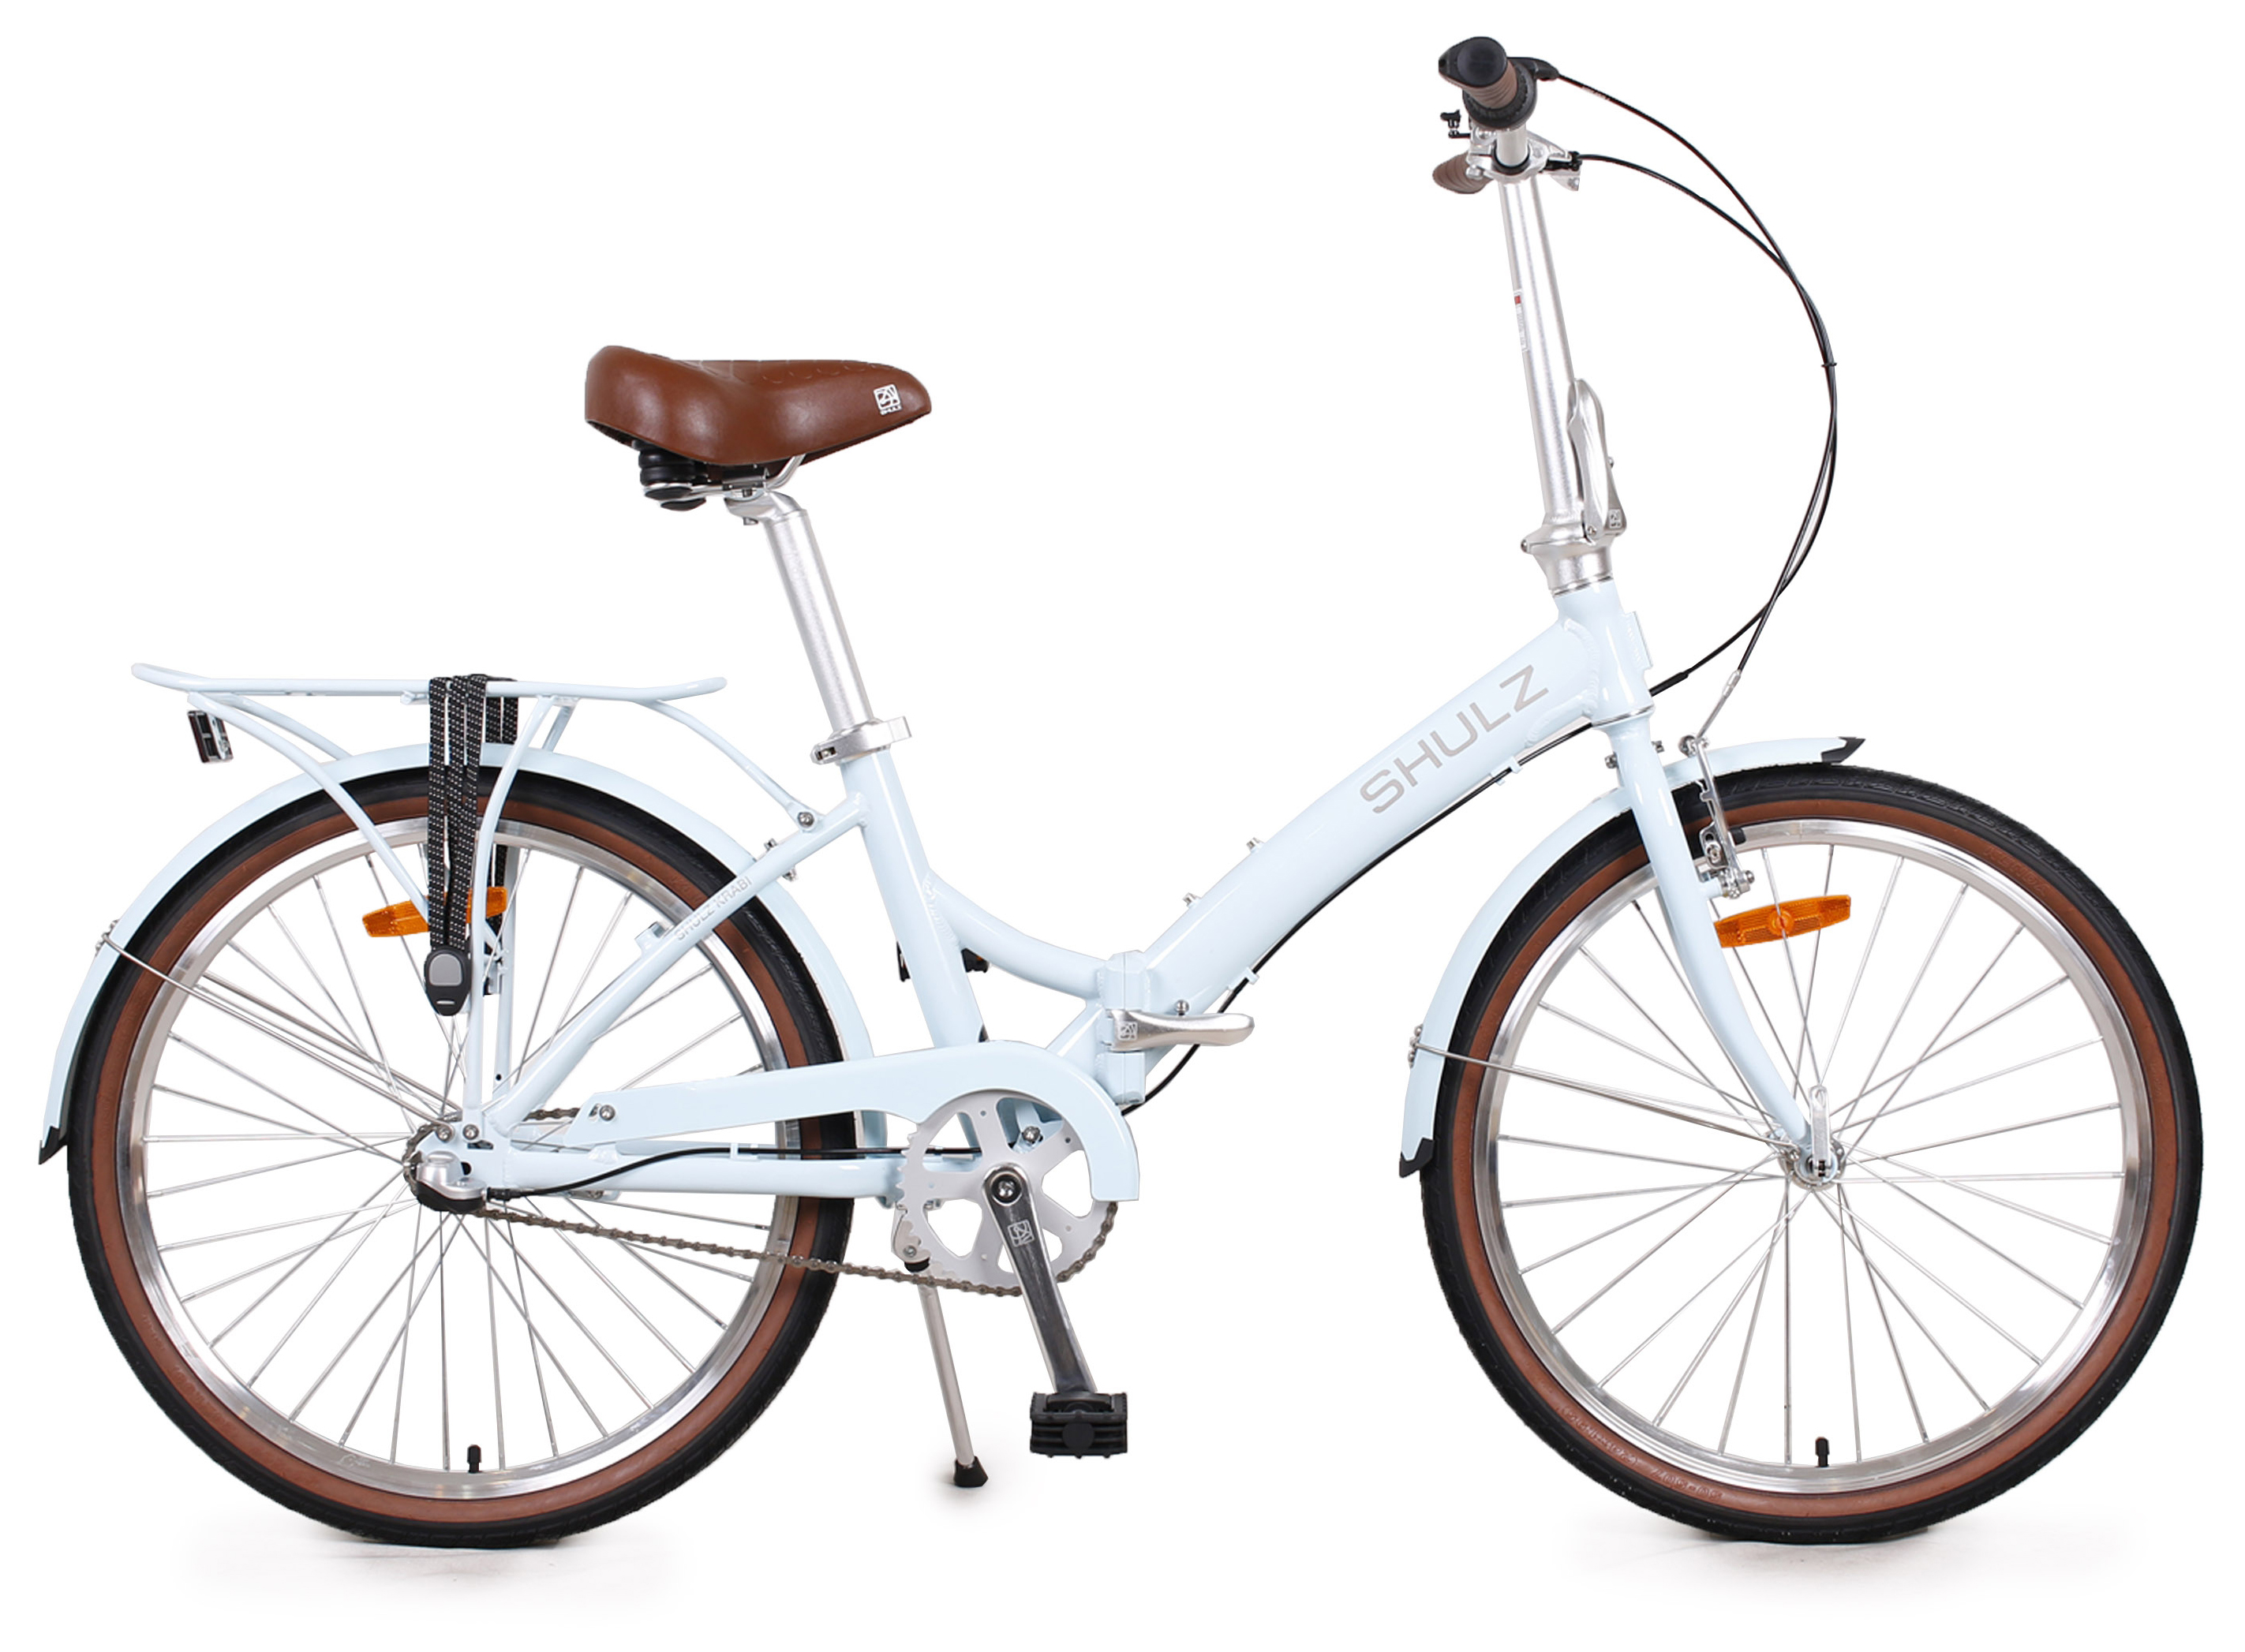  Отзывы о Складном велосипеде Shulz Krabi Coaster 2020